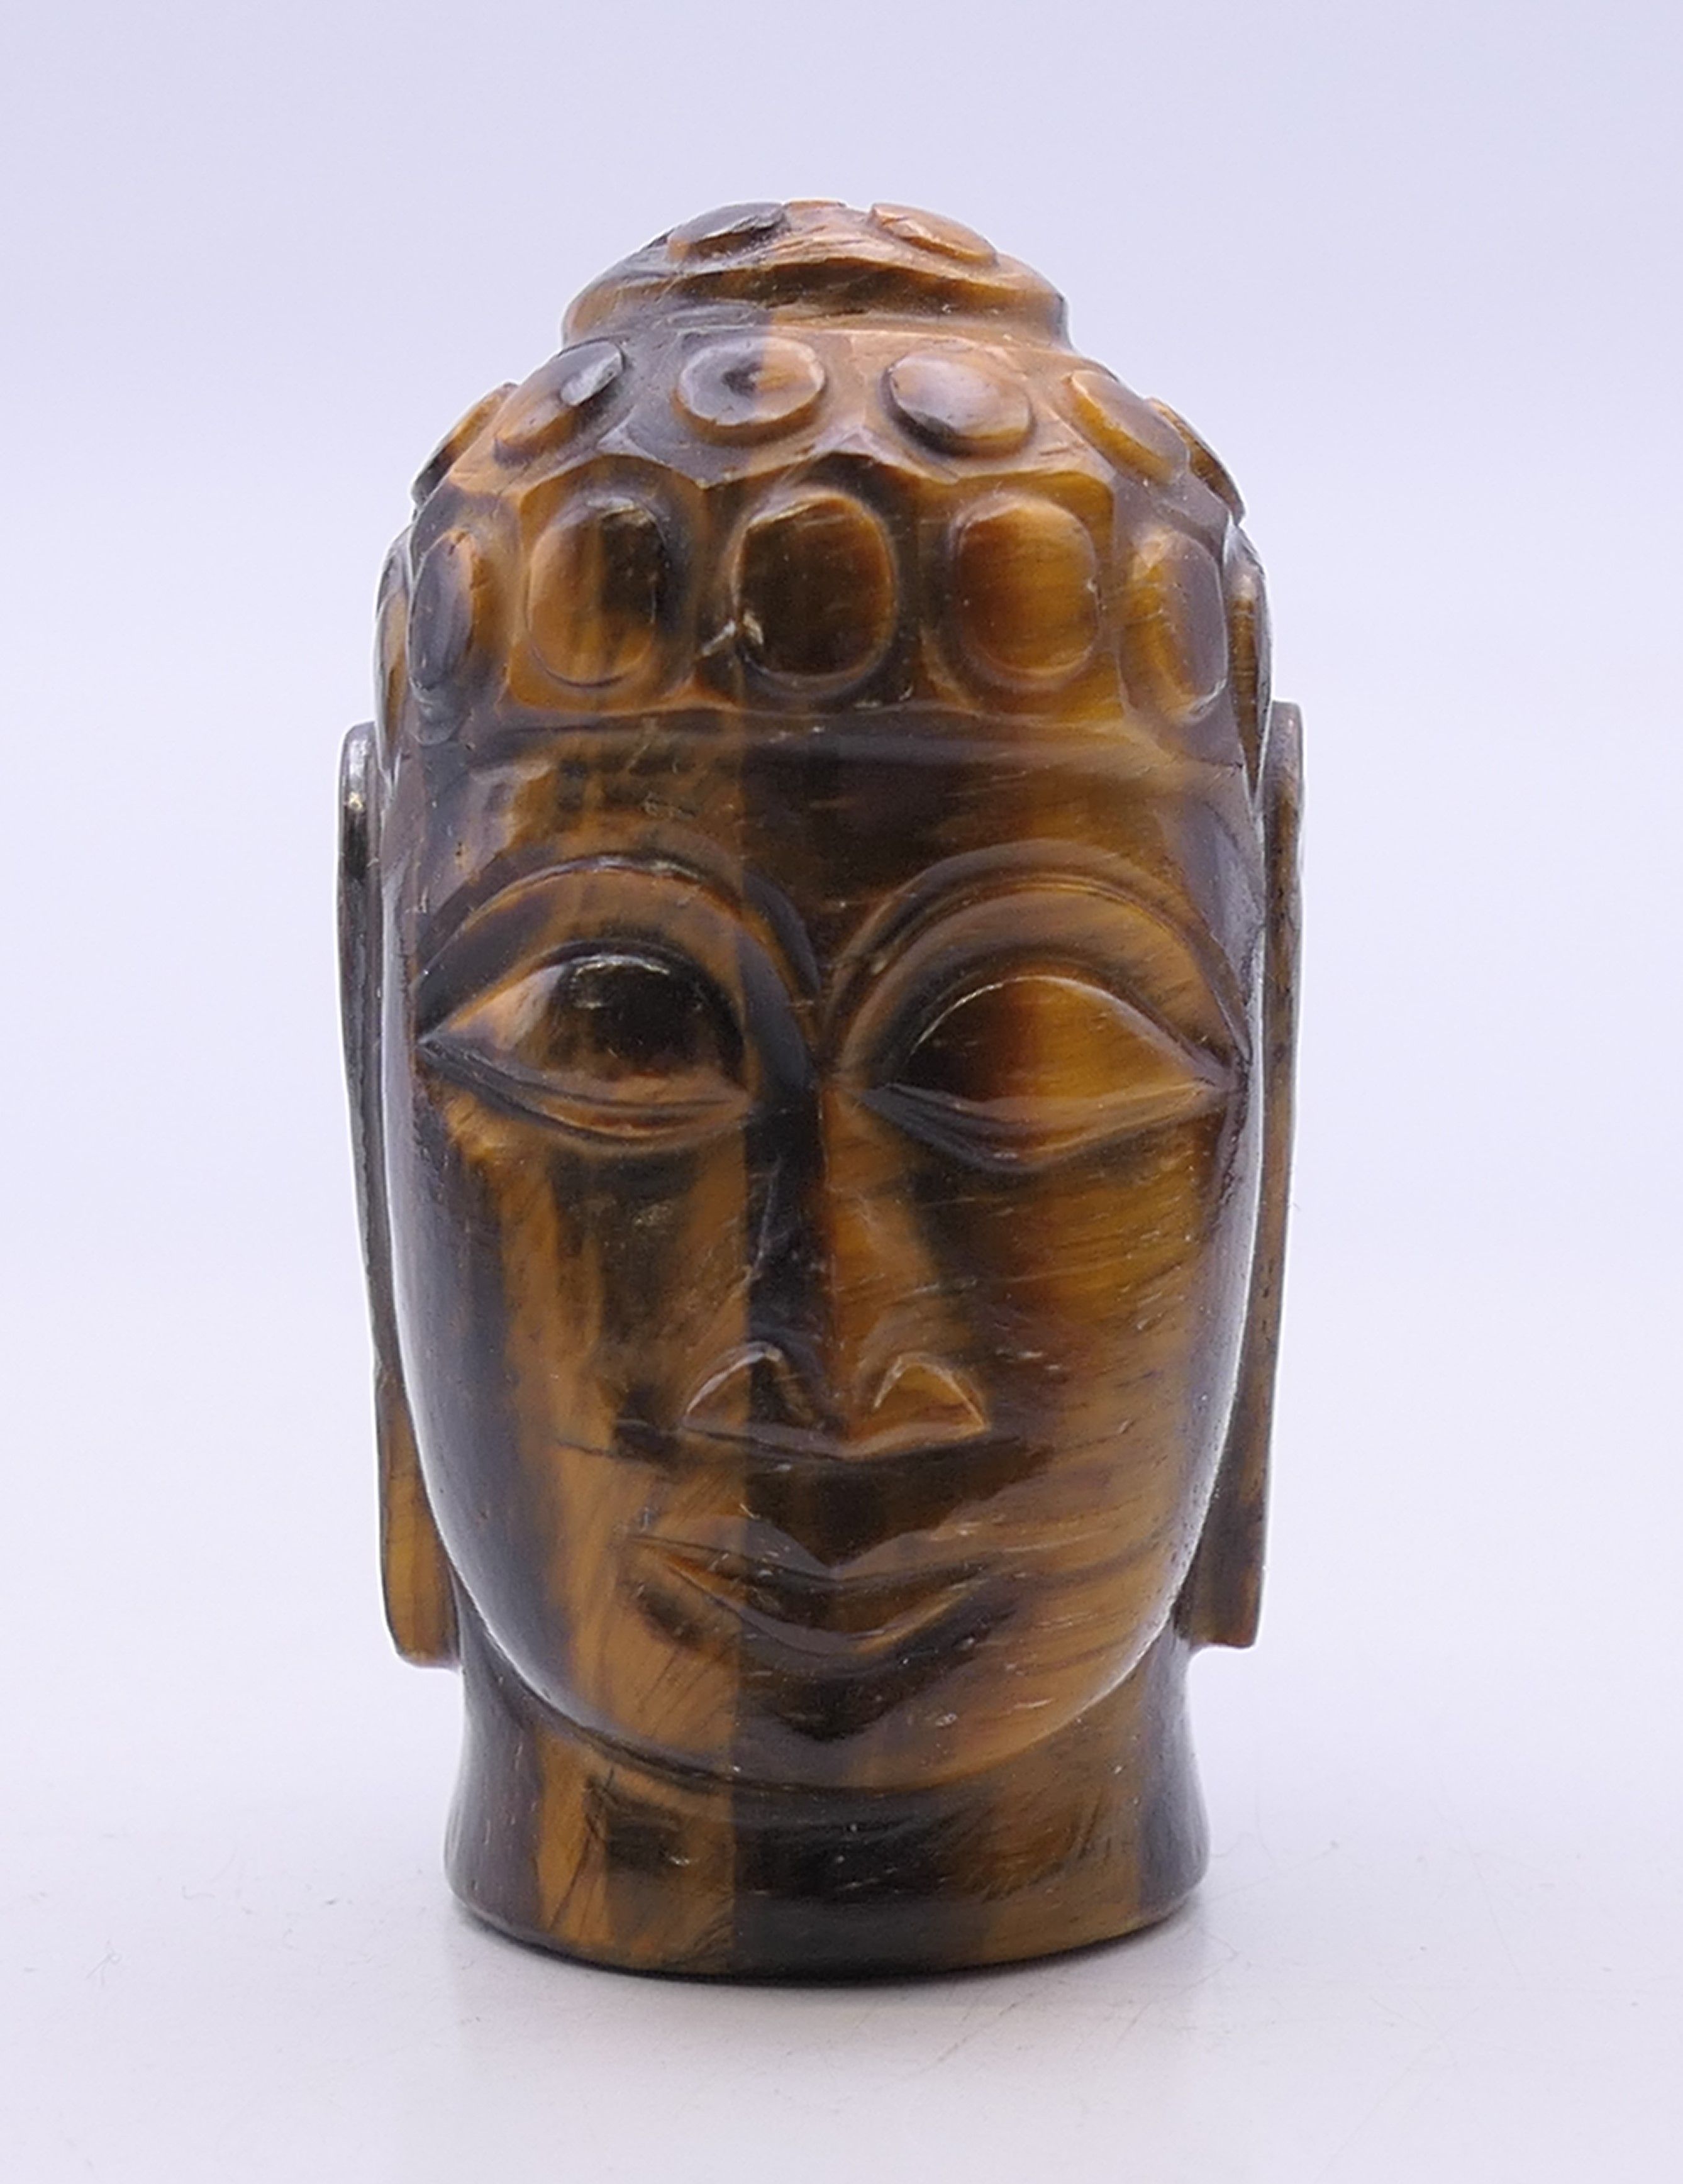 A tigerseye bust of Buddha. 5.5 cm high.